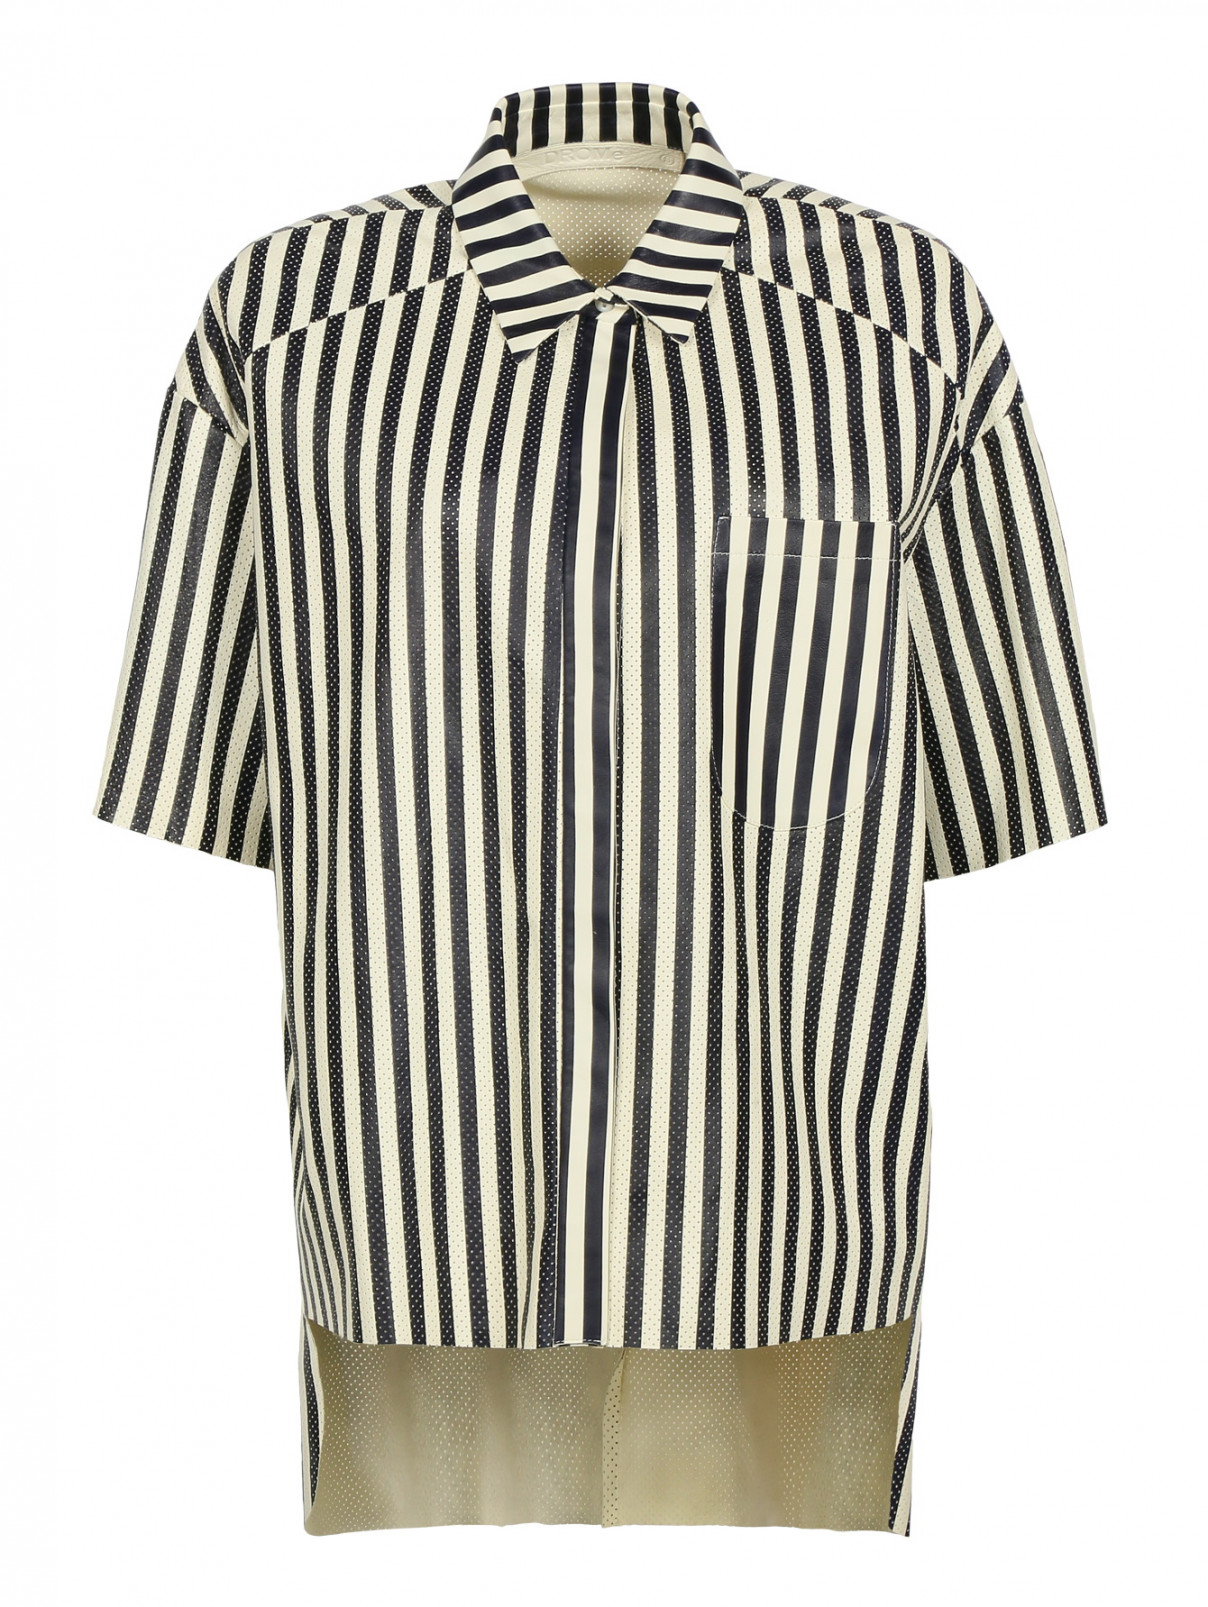 Кожаная рубашка с принтом "в полоску" с накладным карманом DROMe  –  Общий вид  – Цвет:  Белый